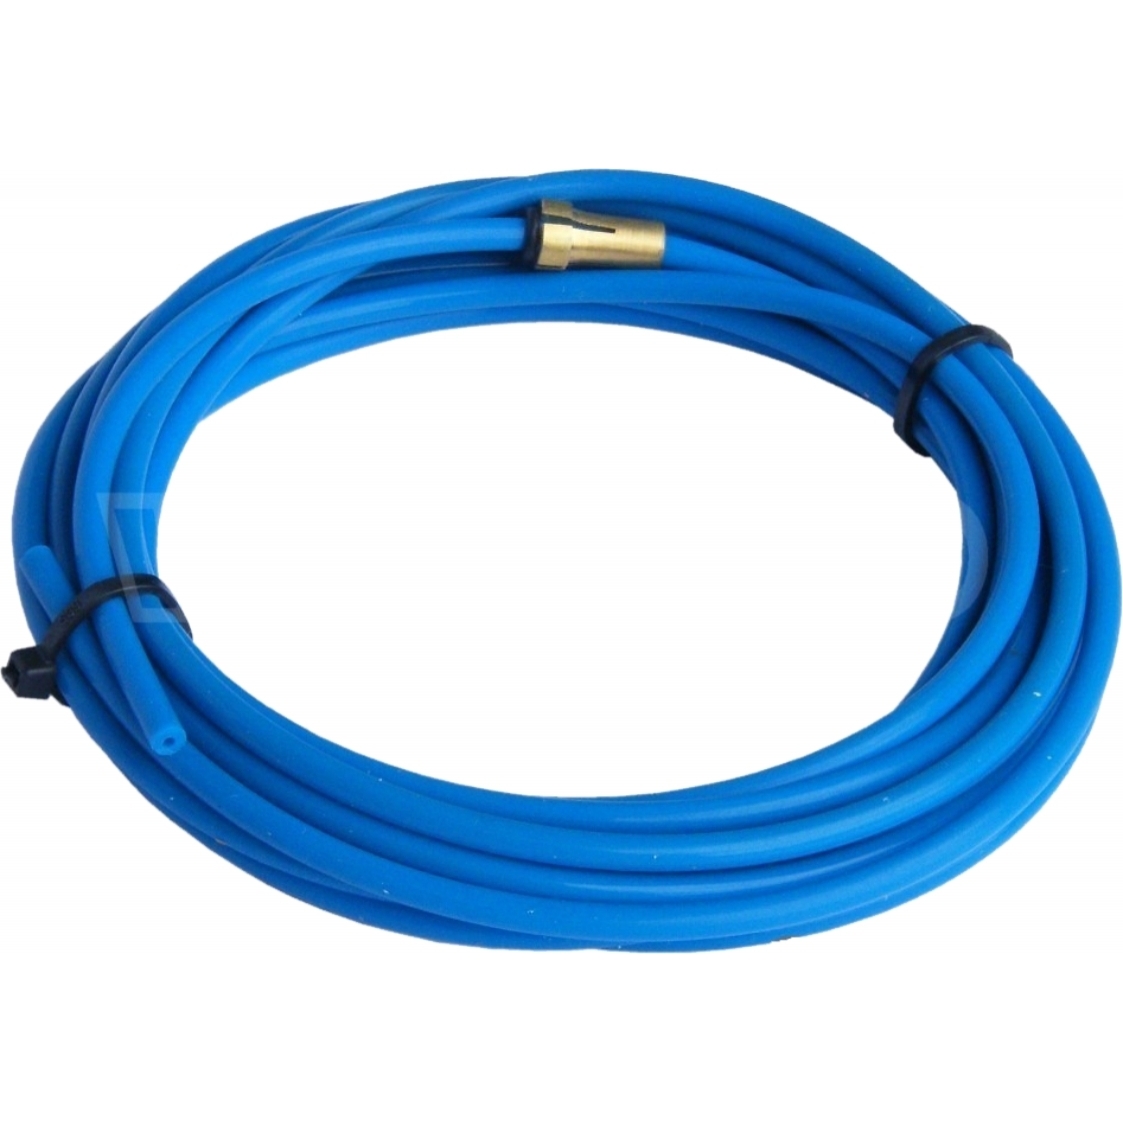 Teflonová trubička BINZEL - modrá - pro drát 0,6 - 0,8 mm - 1,5 x 4,0 - 5 metrů